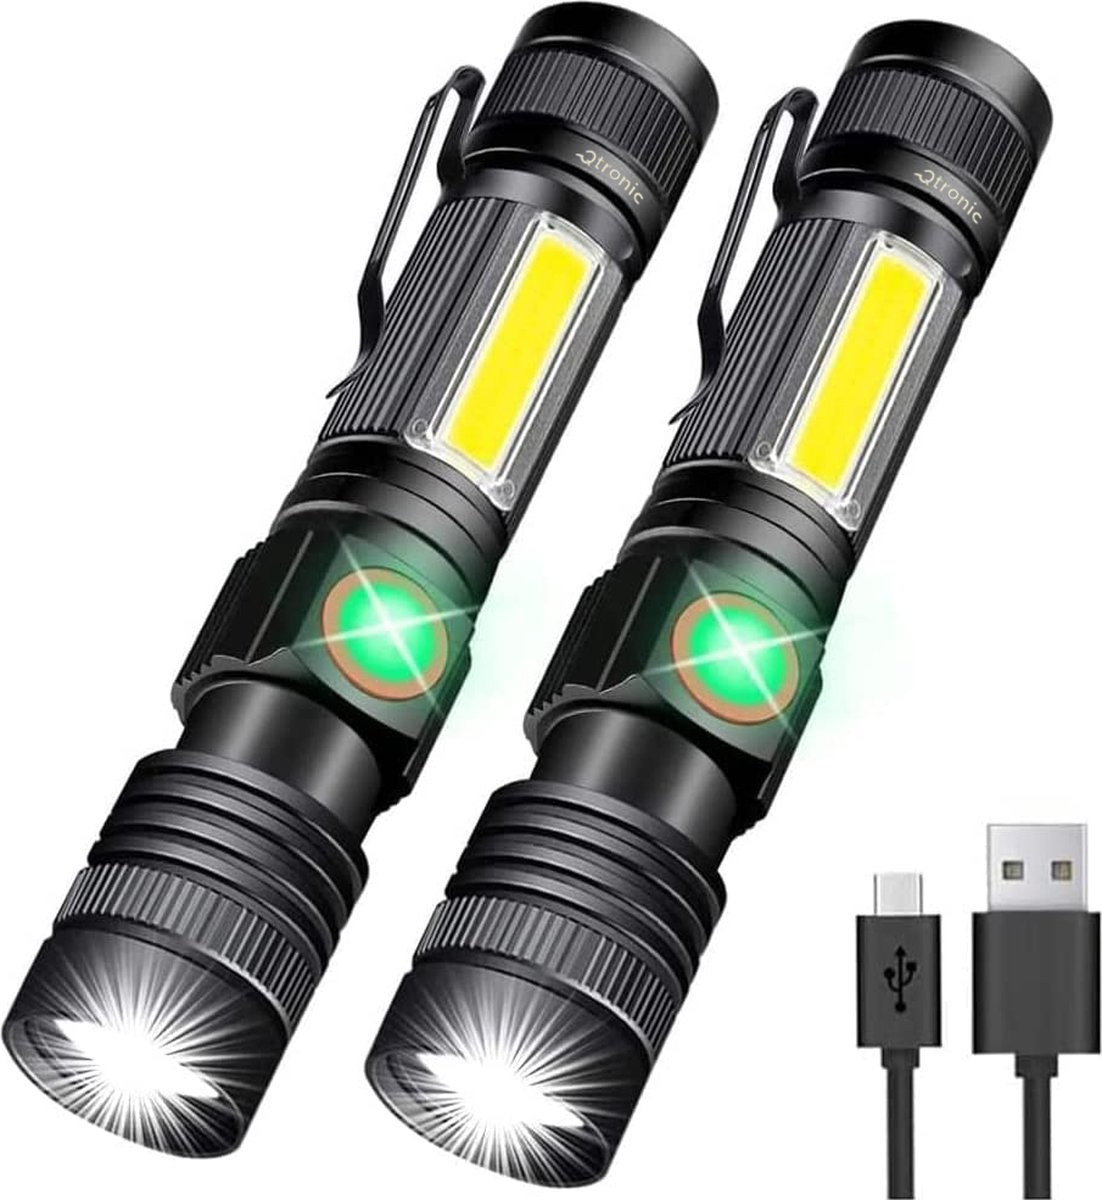 Qtronic Zaklamp LED oplaadbaar met zoomfunctie - Militaire zaklamp - Waterdicht - USB oplaadbaar (inclusief Oplaadkabel & Batterijen).